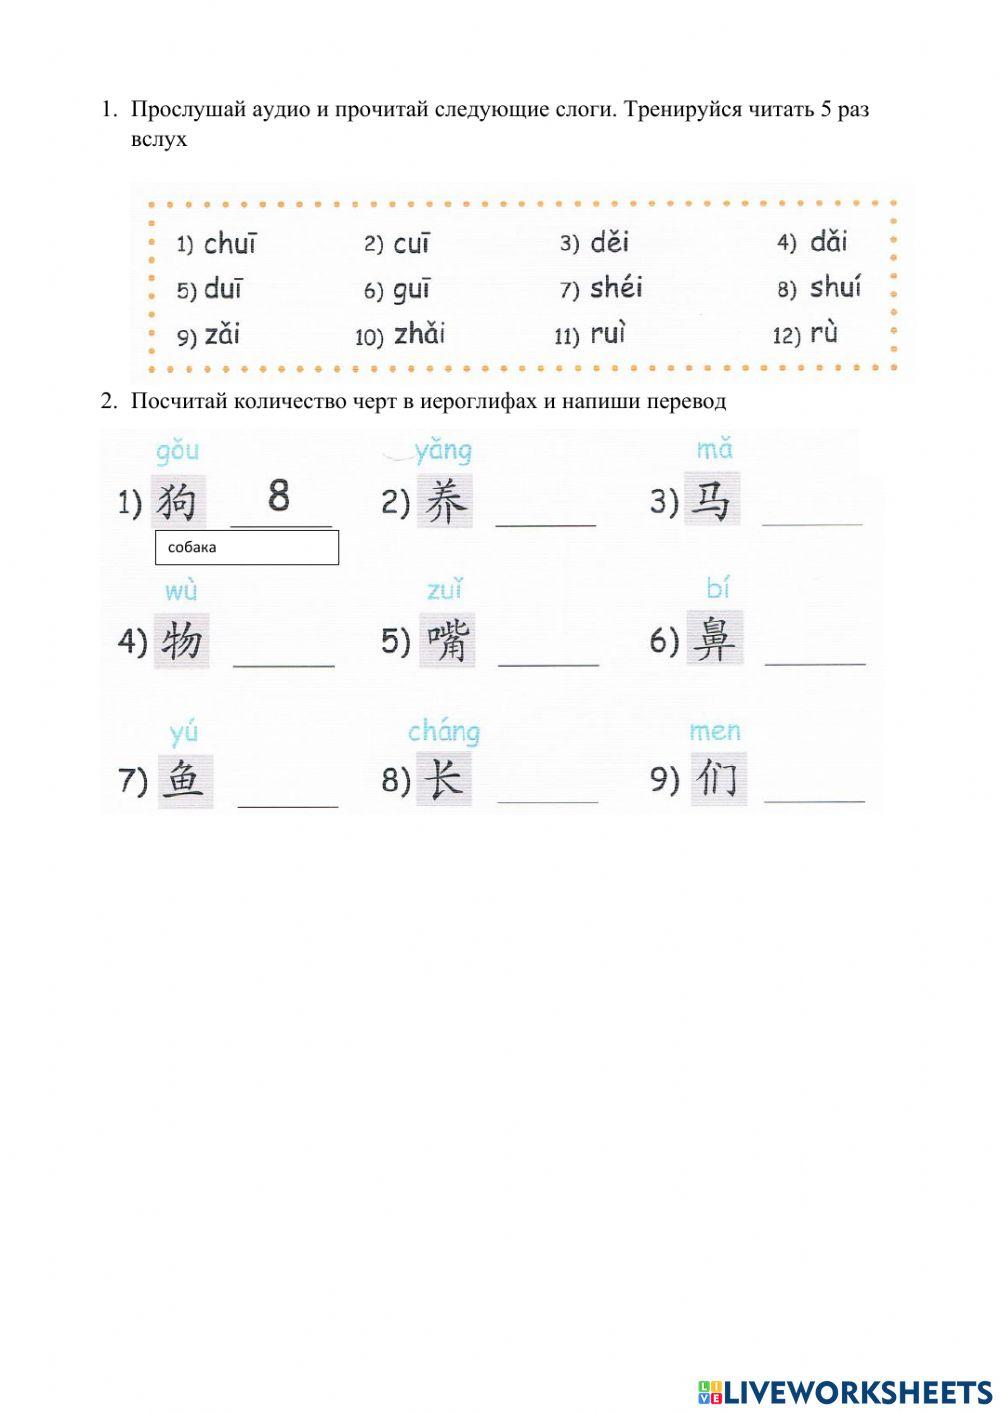 轻松学汉语 少儿版 11课 课本，第75 页 练习 12，13